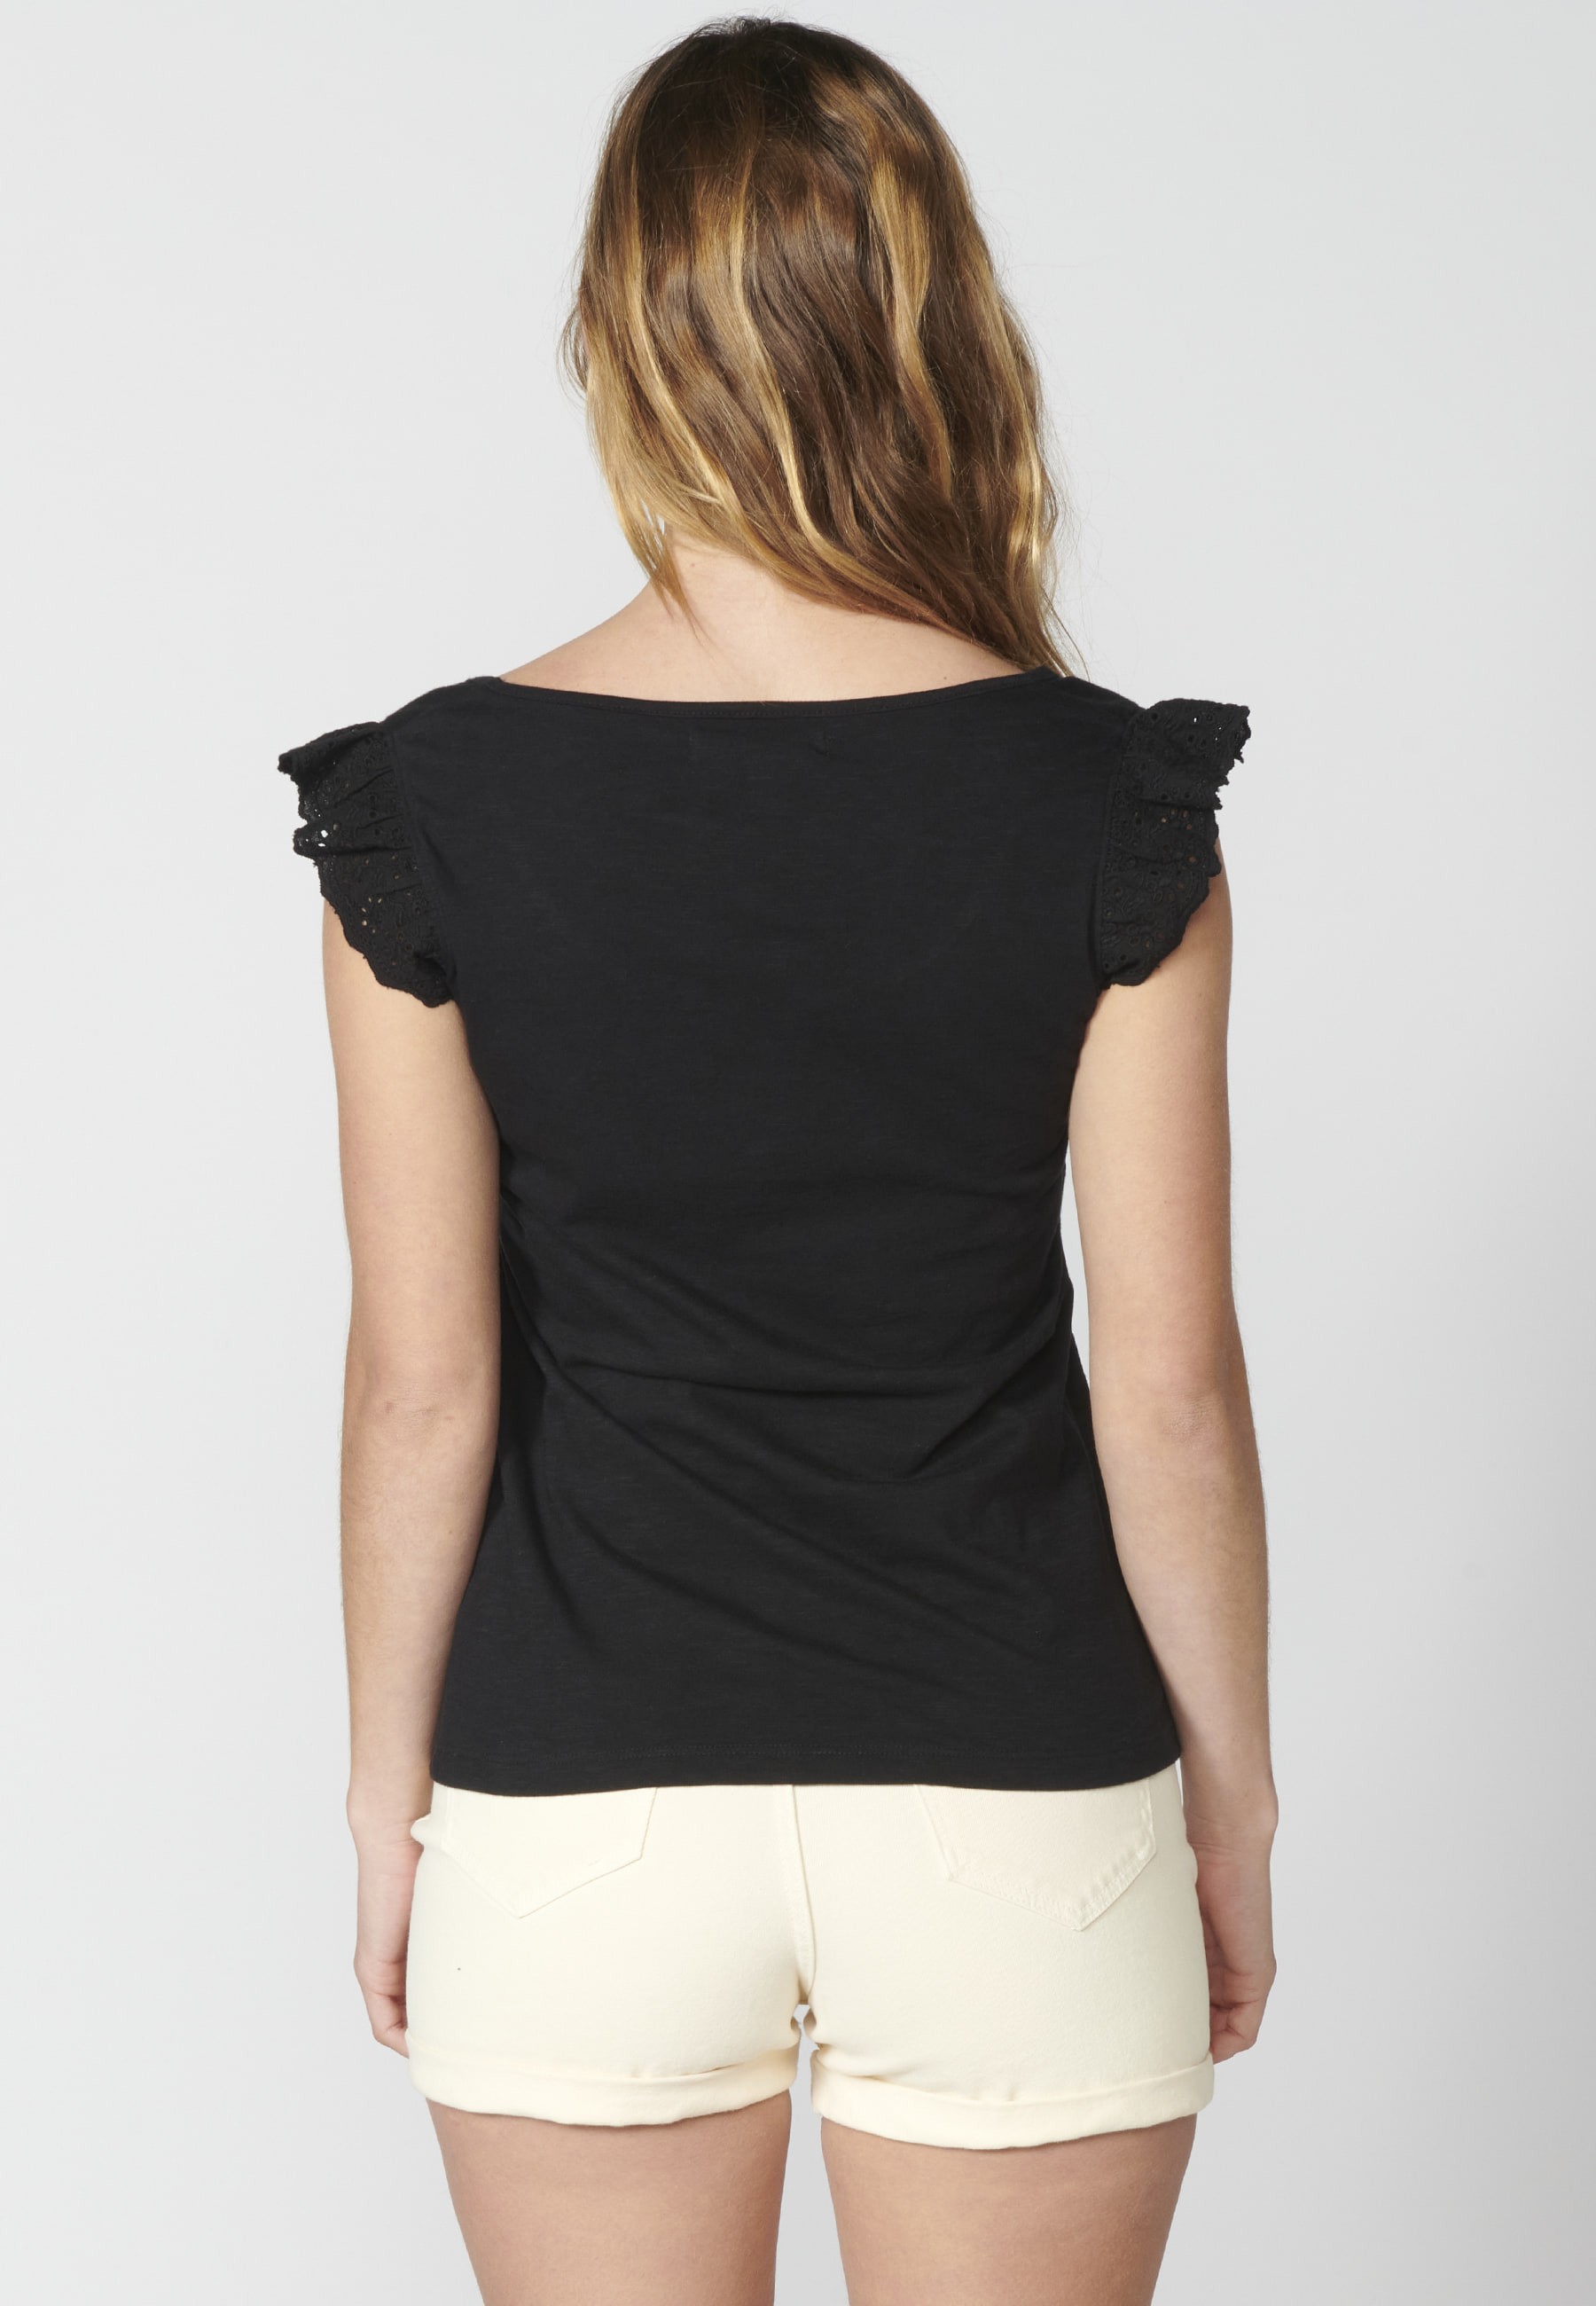 Camiseta manga corta top con bordado floral color Negro para Mujer 7